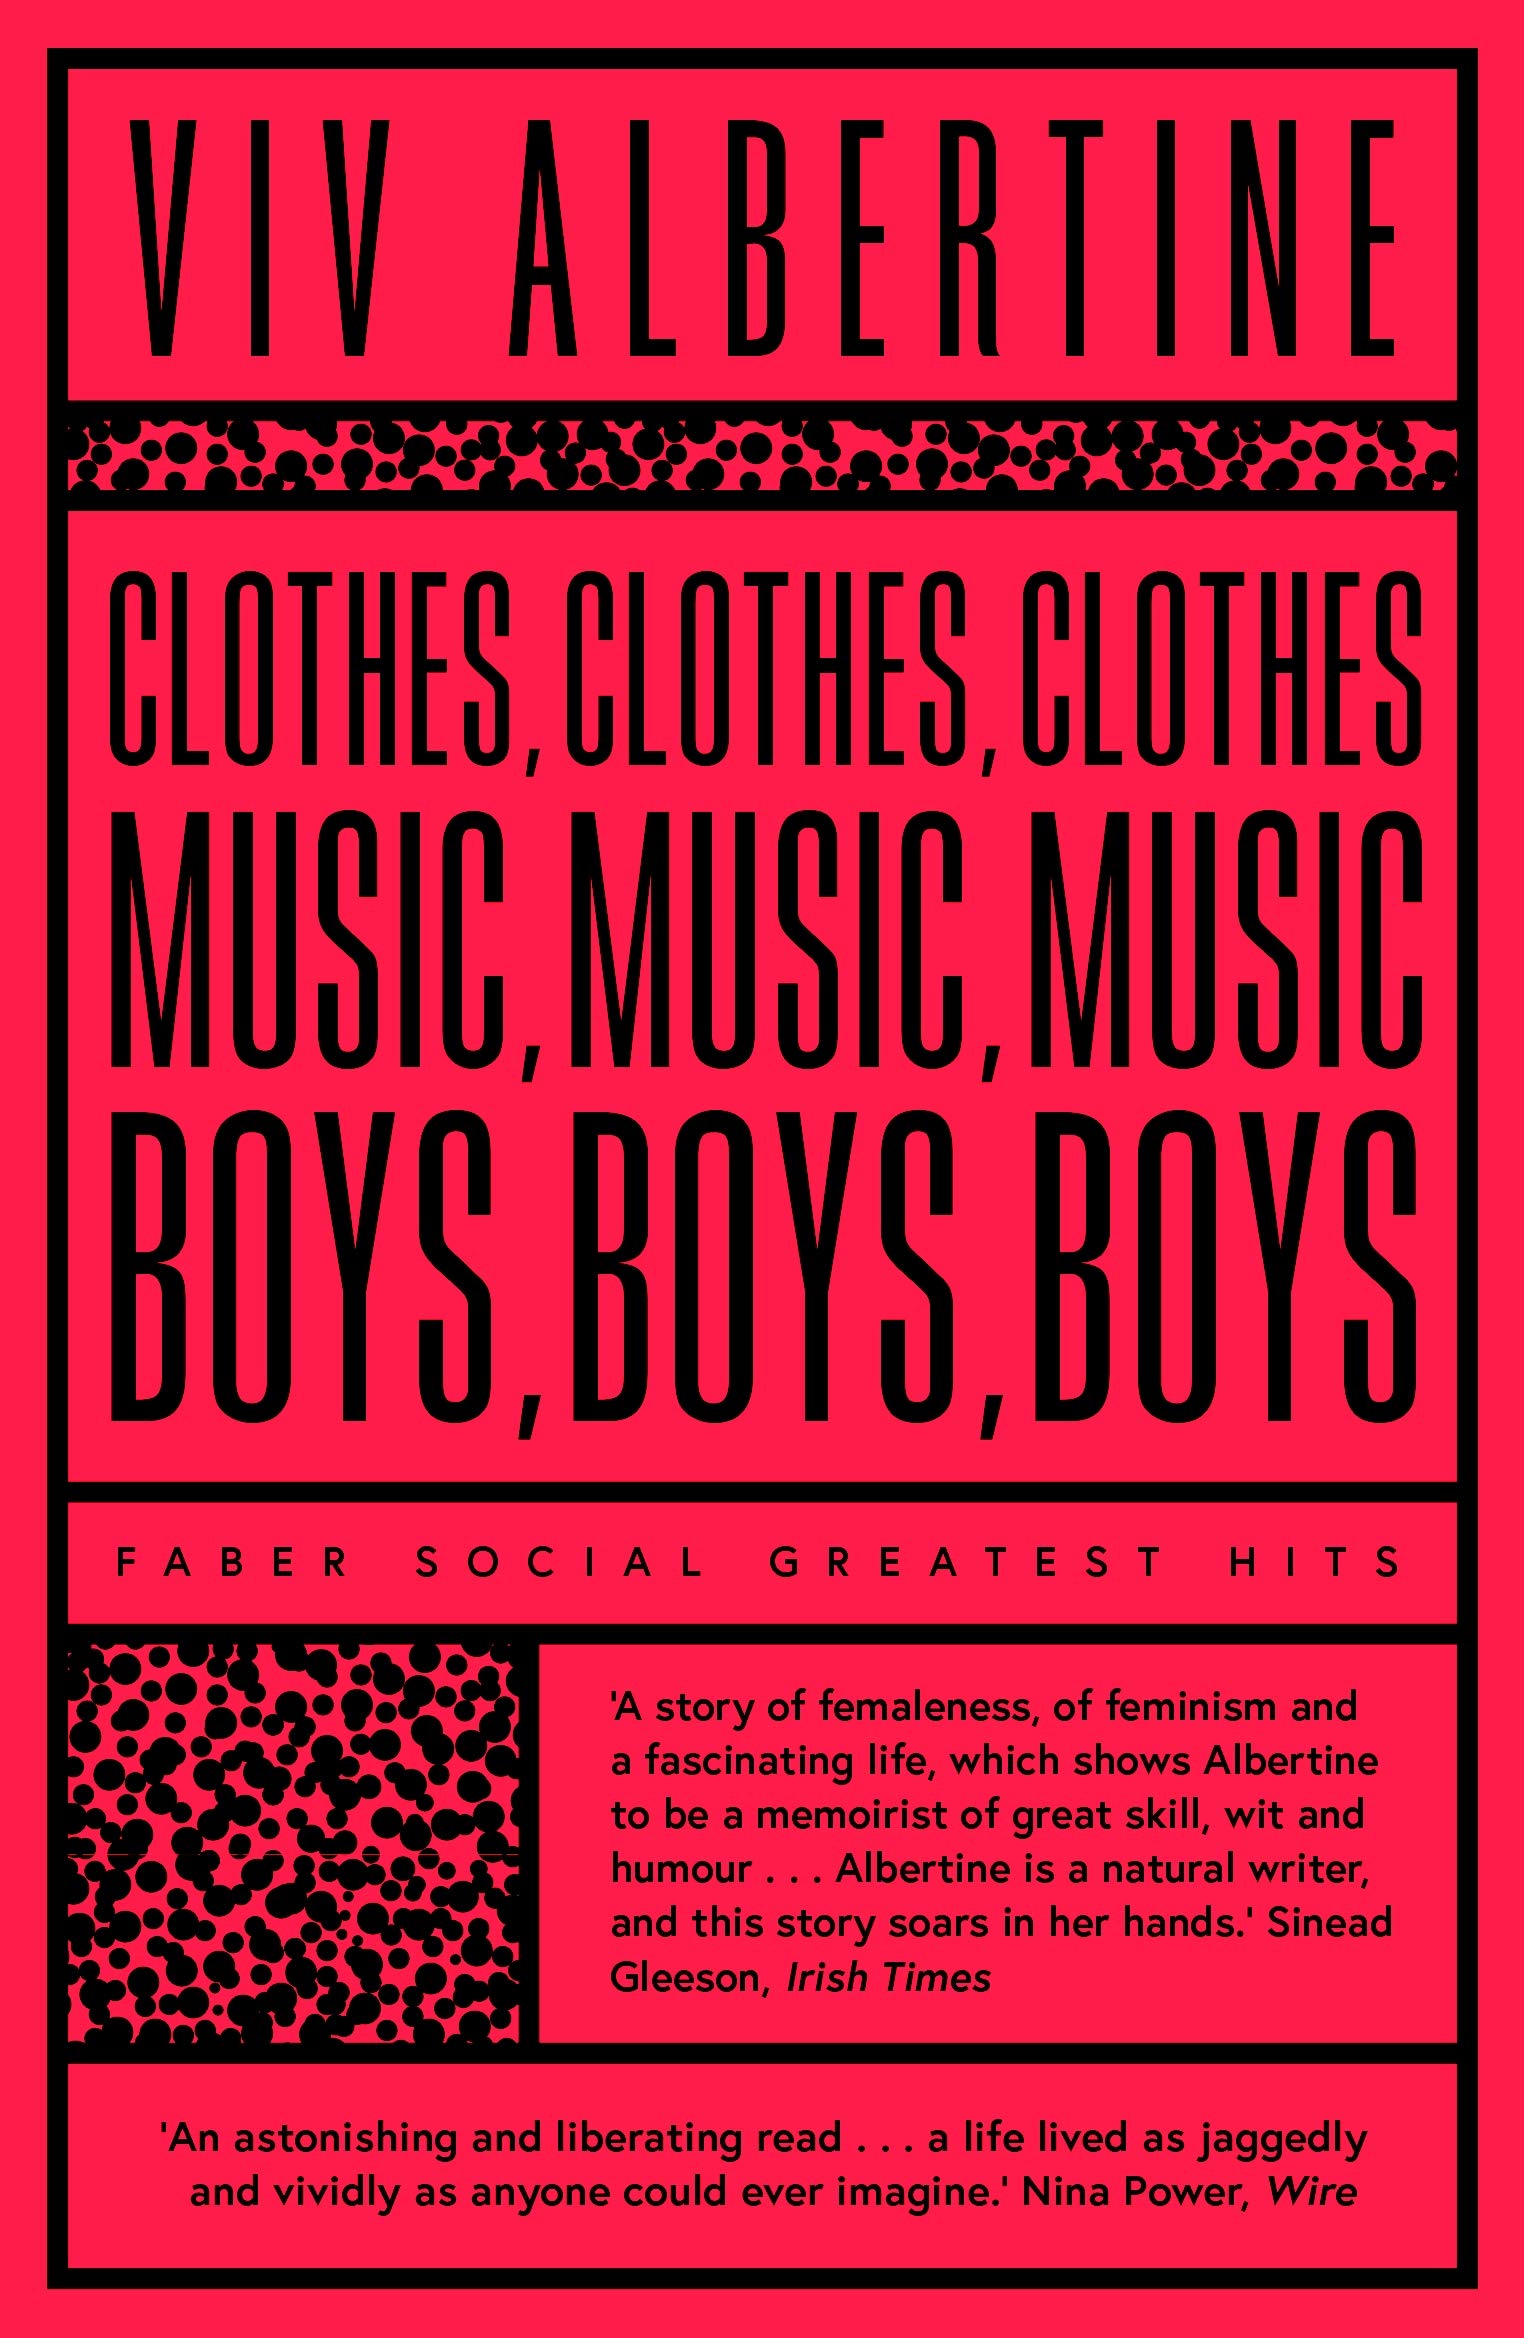 Clothes, Clothes, Clothes. Music, Music, Music. Boys, Boys, Boys by Viv Albertine